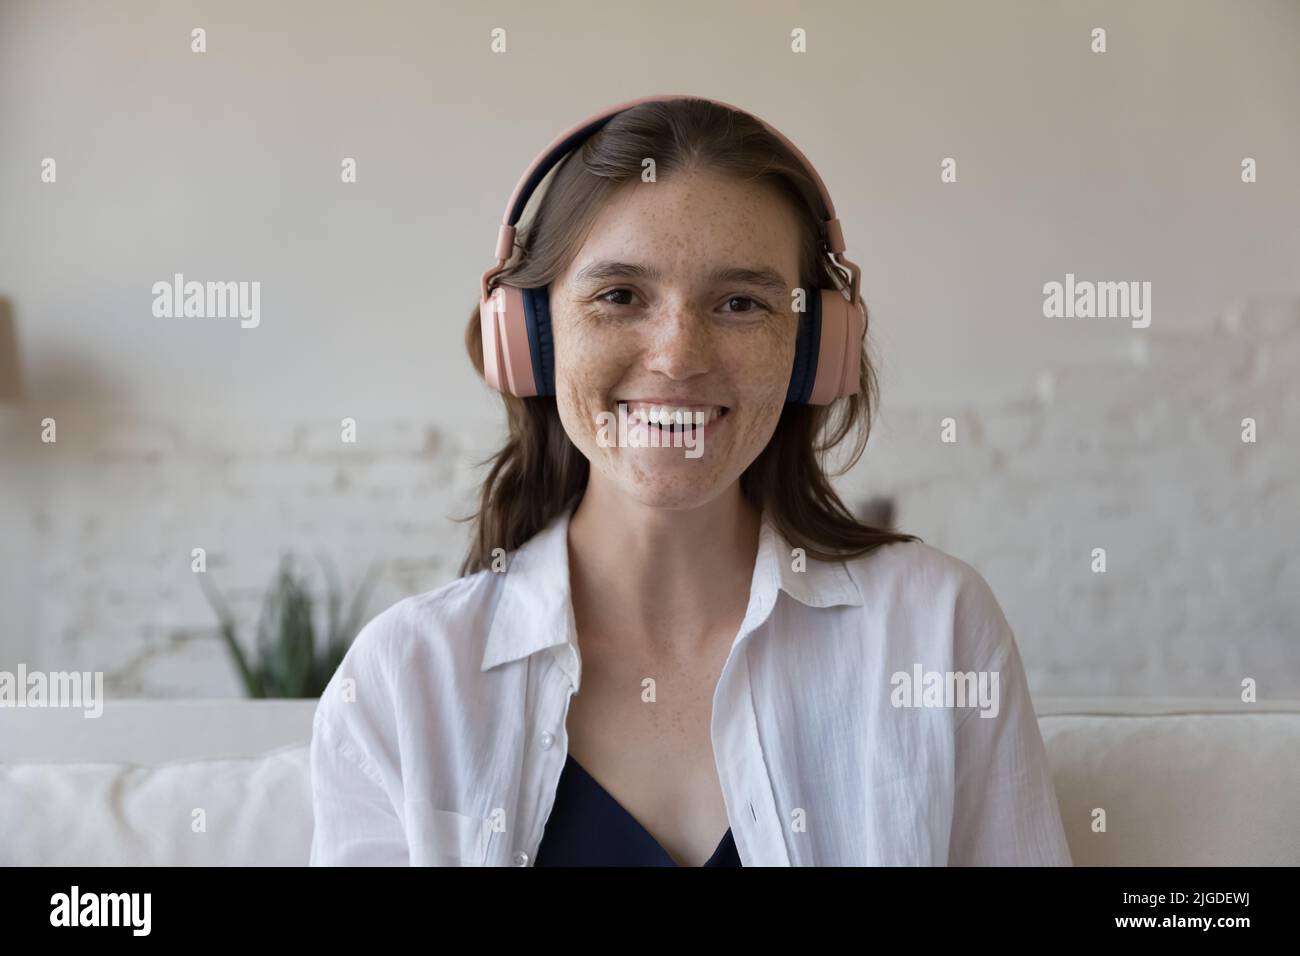 Headshot Portrait Attraktive Sommersprossen-Frau in Kopfhörern starrt auf die Kamera Stockfoto